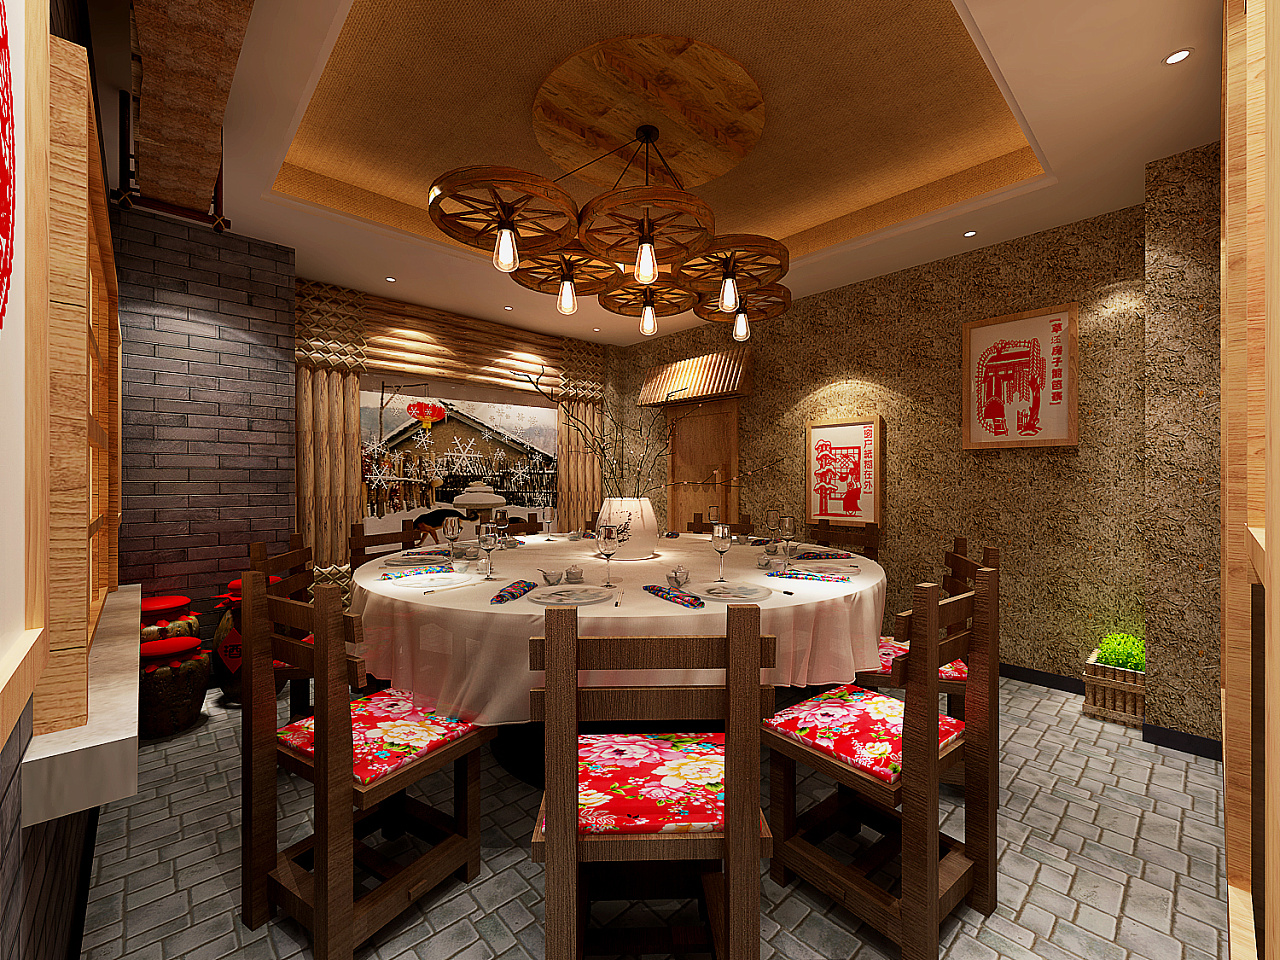 中式餐厅-CND设计网,中国设计网络首选品牌